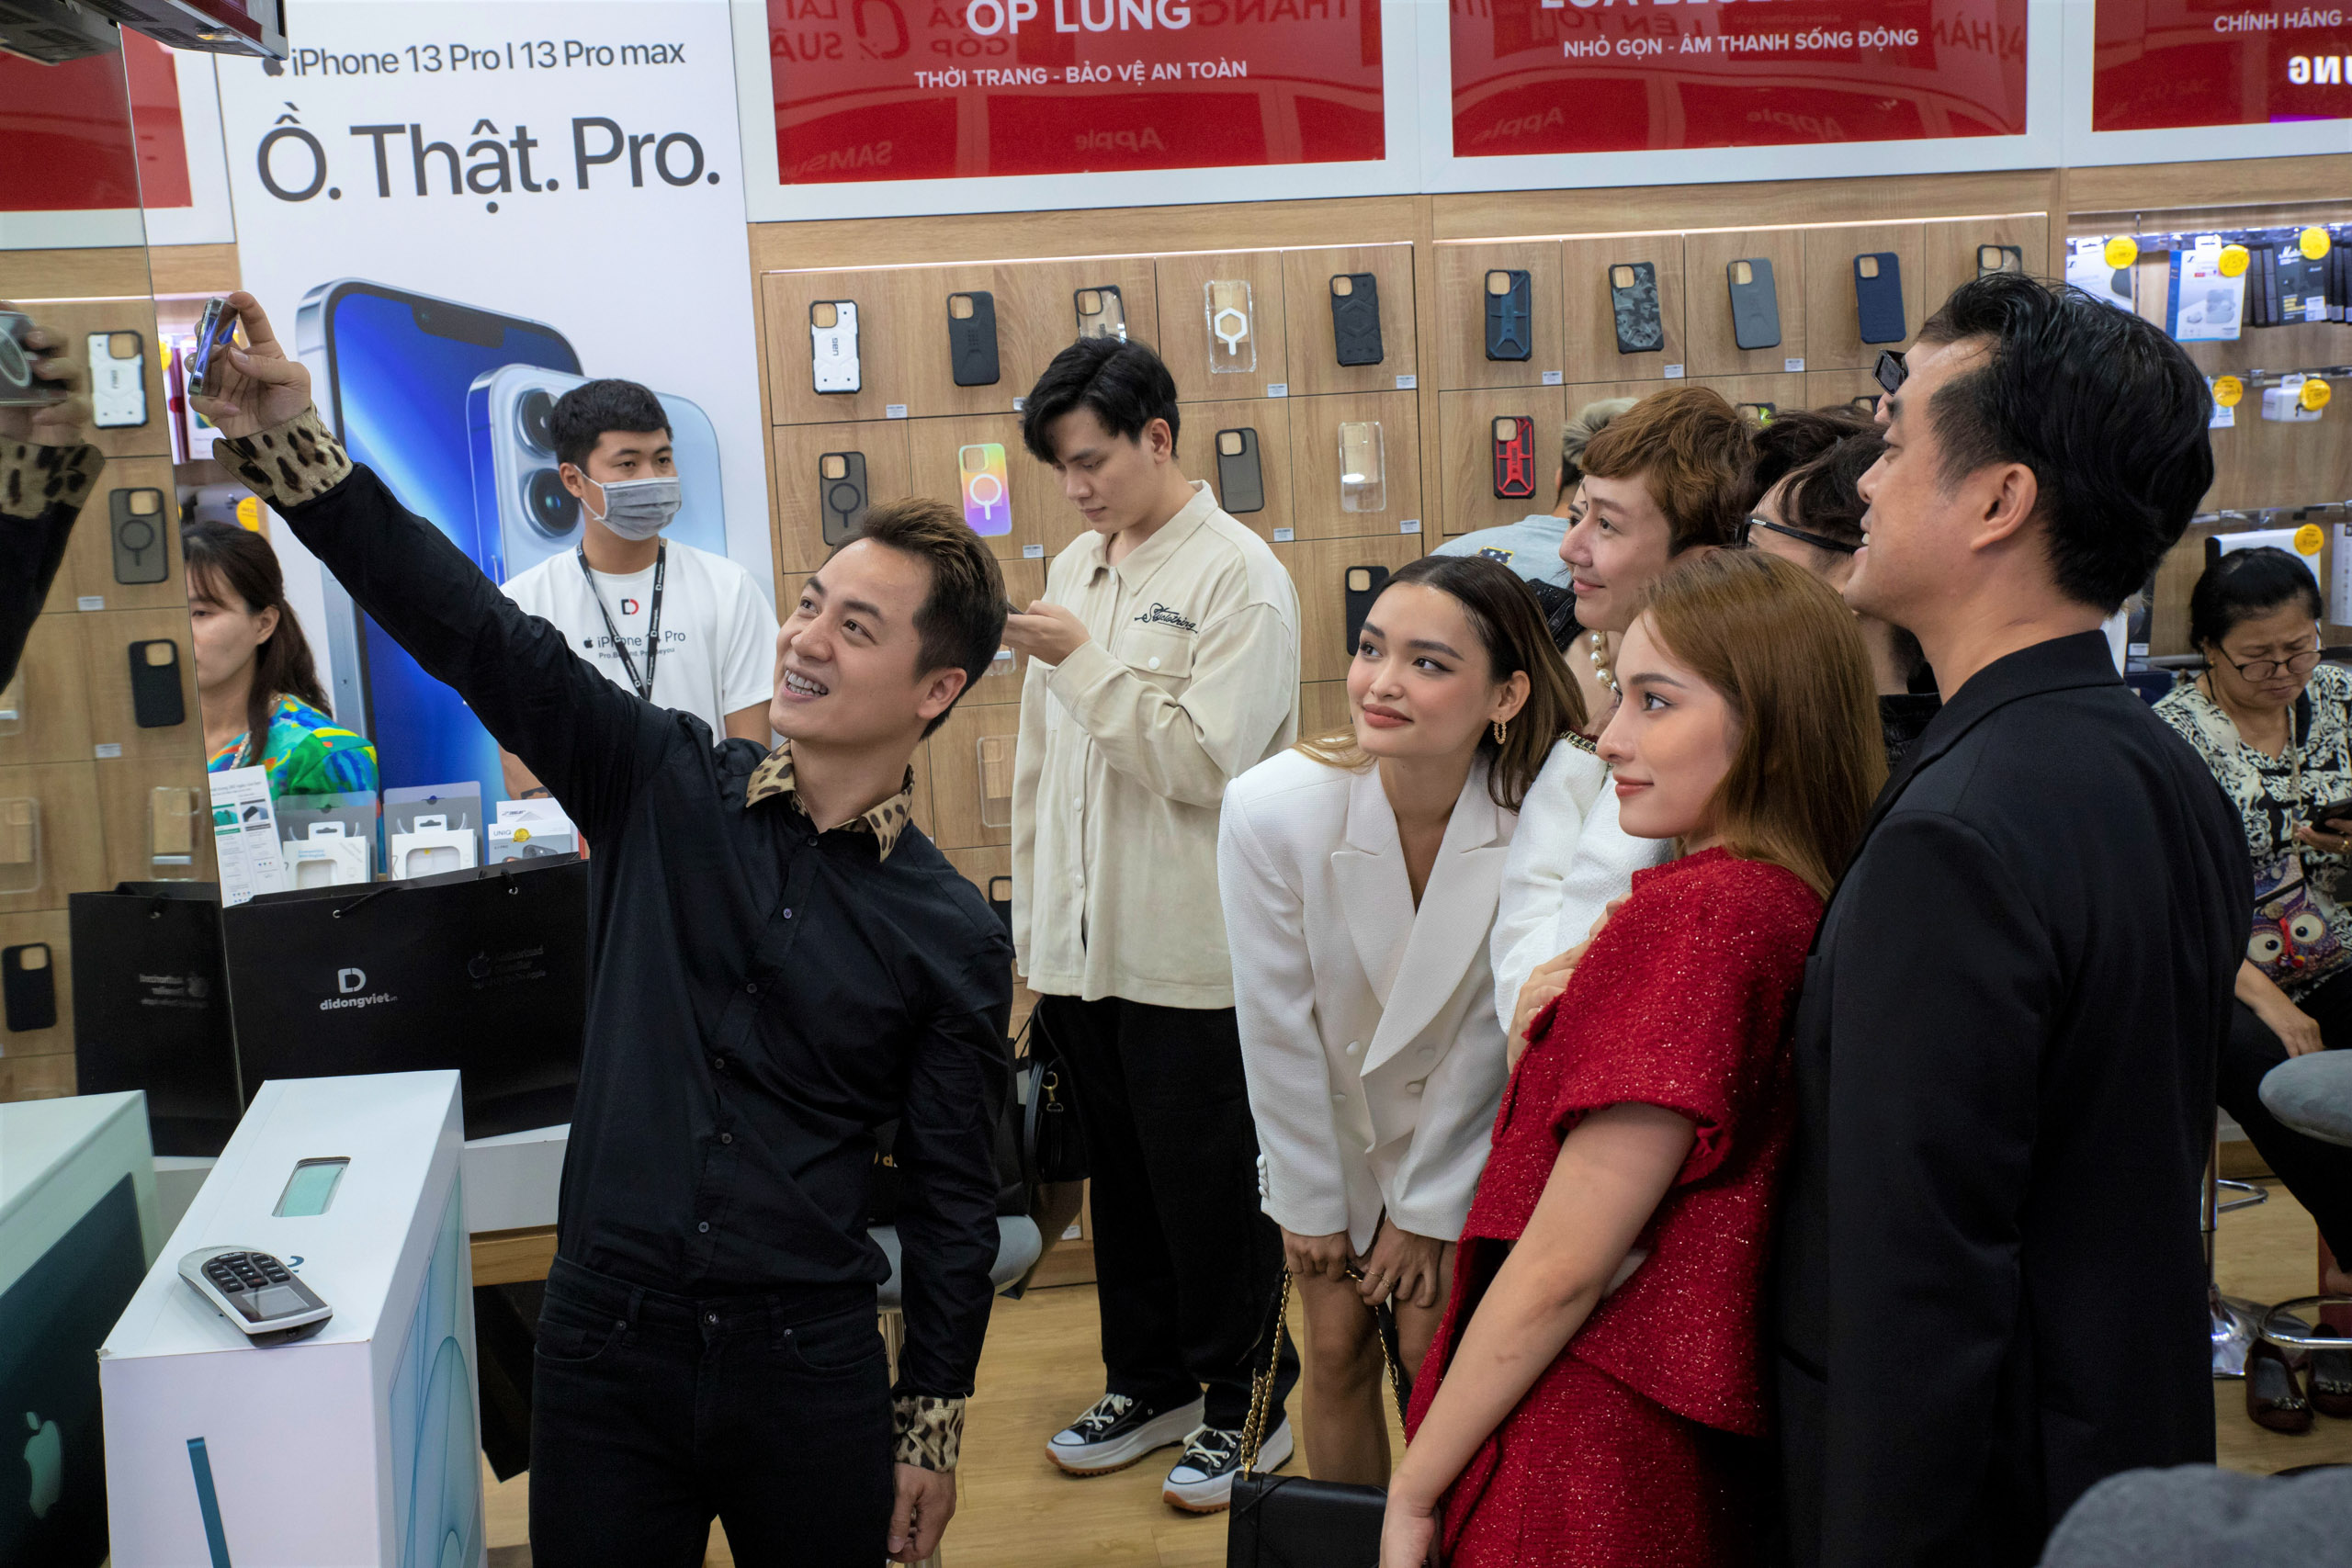 Di Động Việt tổ chức sự kiện "Vẽ tiếp ước mơ, mở ra tương lai", mở bán iPhone 14, giúp đỡ bệnh nhi nghèo